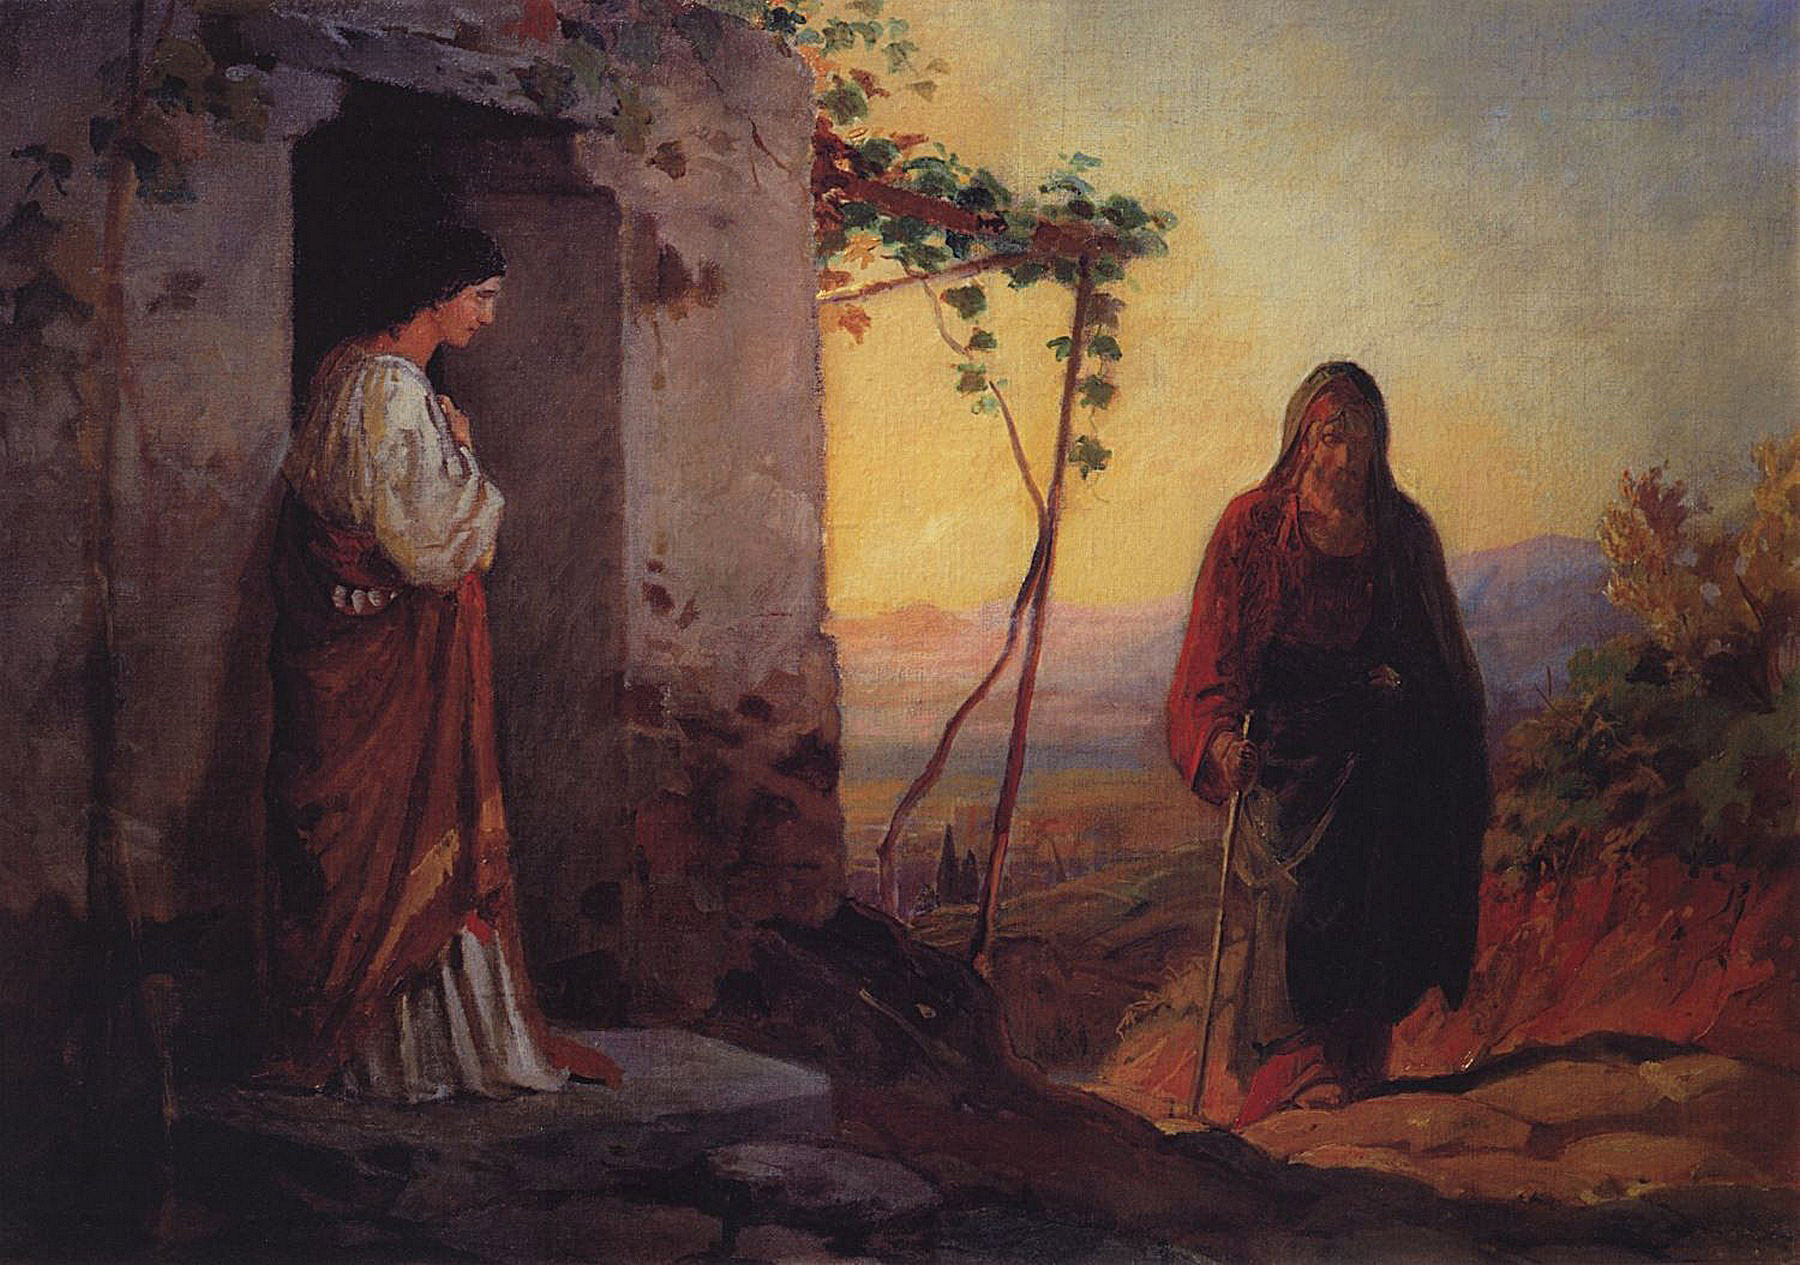 Мария, сестра Лазаря, встречает Иисуса Христа, идущего к ним в дом, 1864.jpg